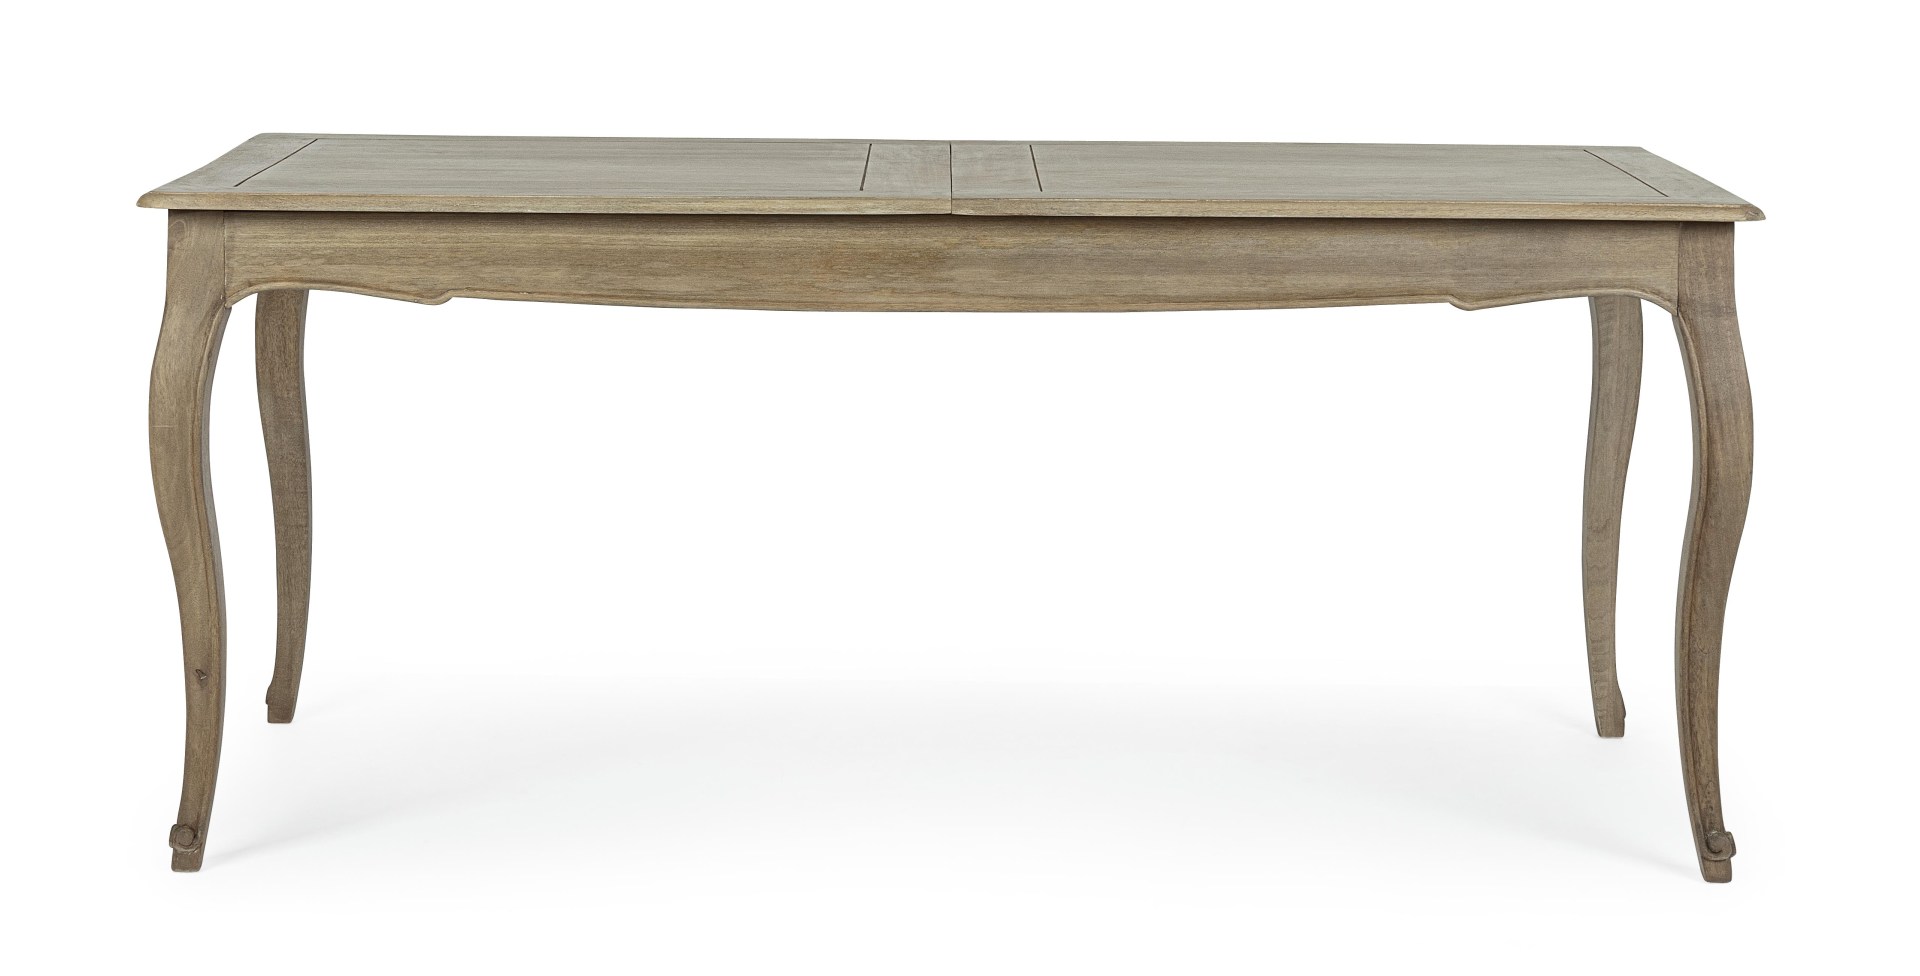 Der Esstisch Domitille überzeugt mit seinem klassischem Design. Gefertigt wurde er aus Mangoholz, welches einen natürlichen Farbton besitzt. Der Tisch ist ausziehbar von einer Länge von 180 cm auf 225 cm.